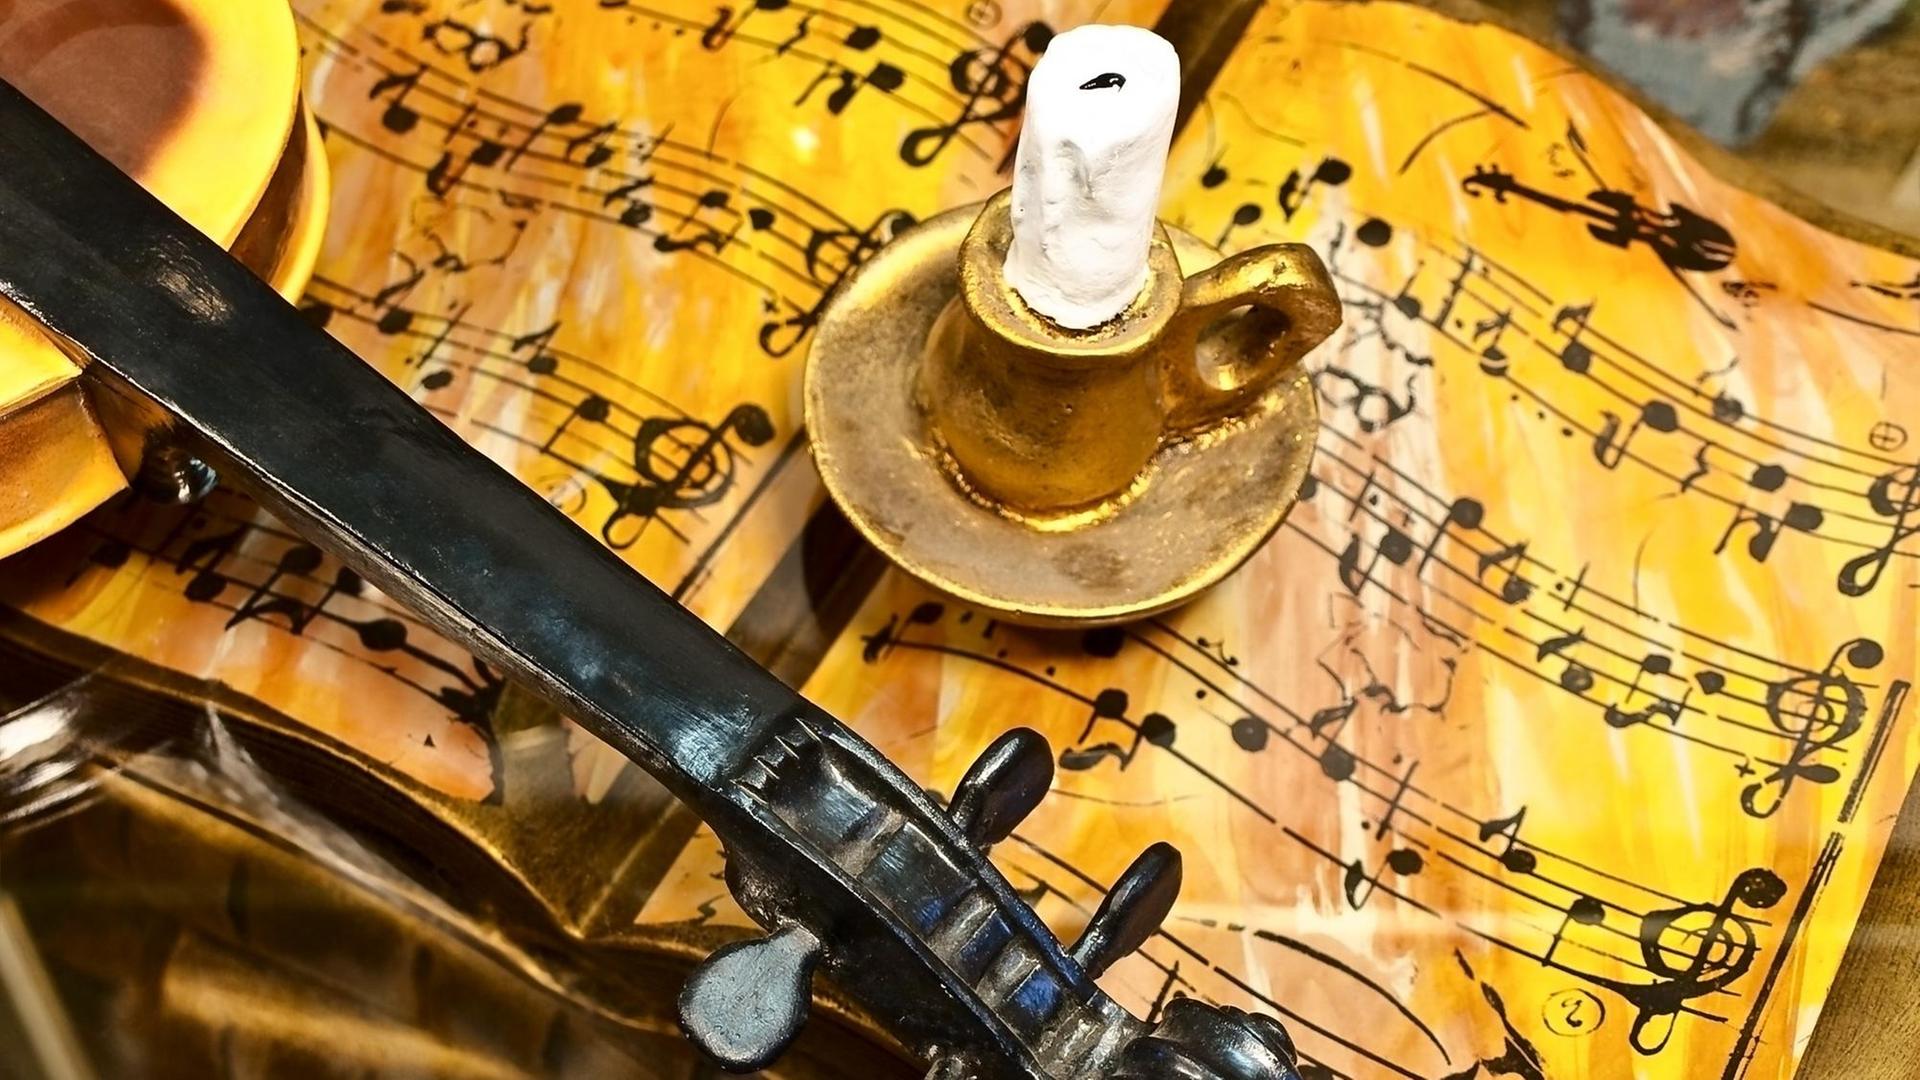 Eine unspielbare Geige mit fehlenden Saiten ruht auf einem nachgemachten Notenheft, das voller falscher, unspielbarer Notenzeichen ist. Auf den Seiten steht ein Kerzenständer, der wie eine Kulisse aus Knete aussieht.